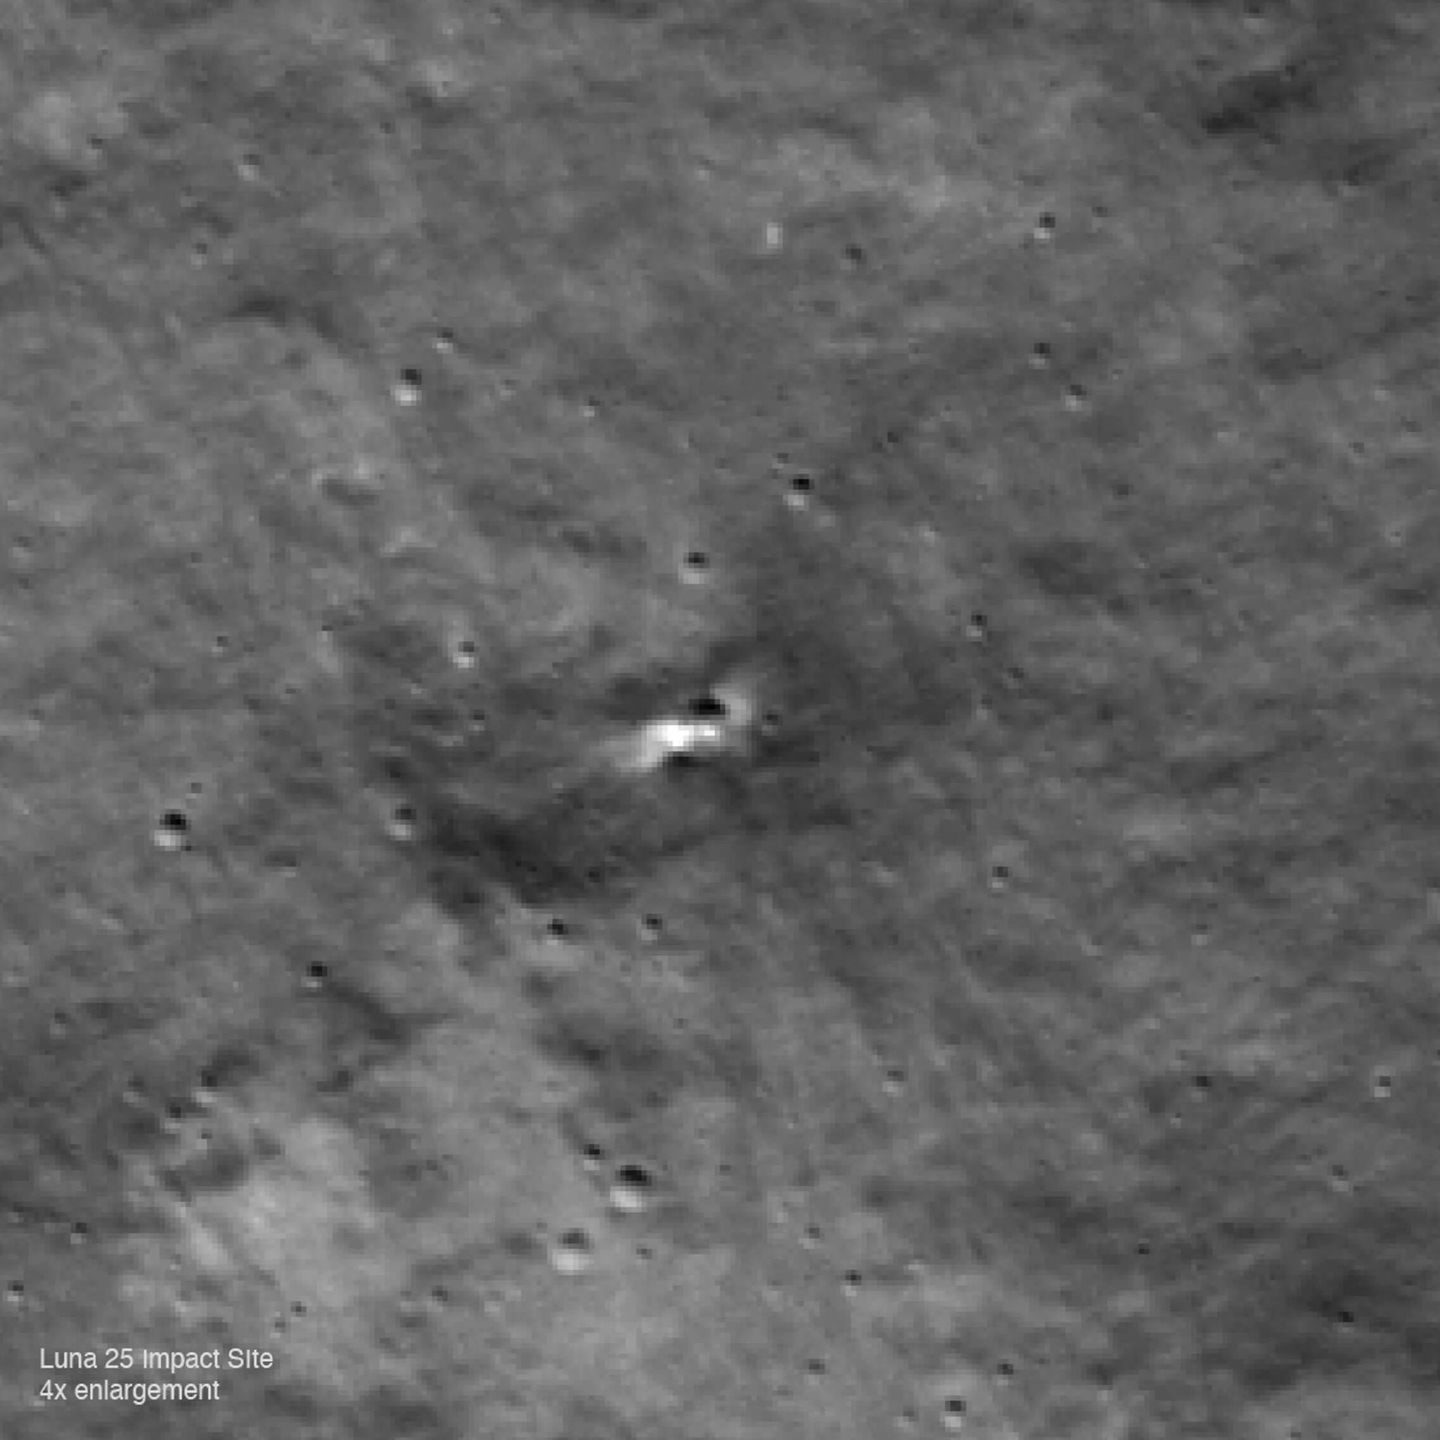 Ampliación del cráter. (NASA)